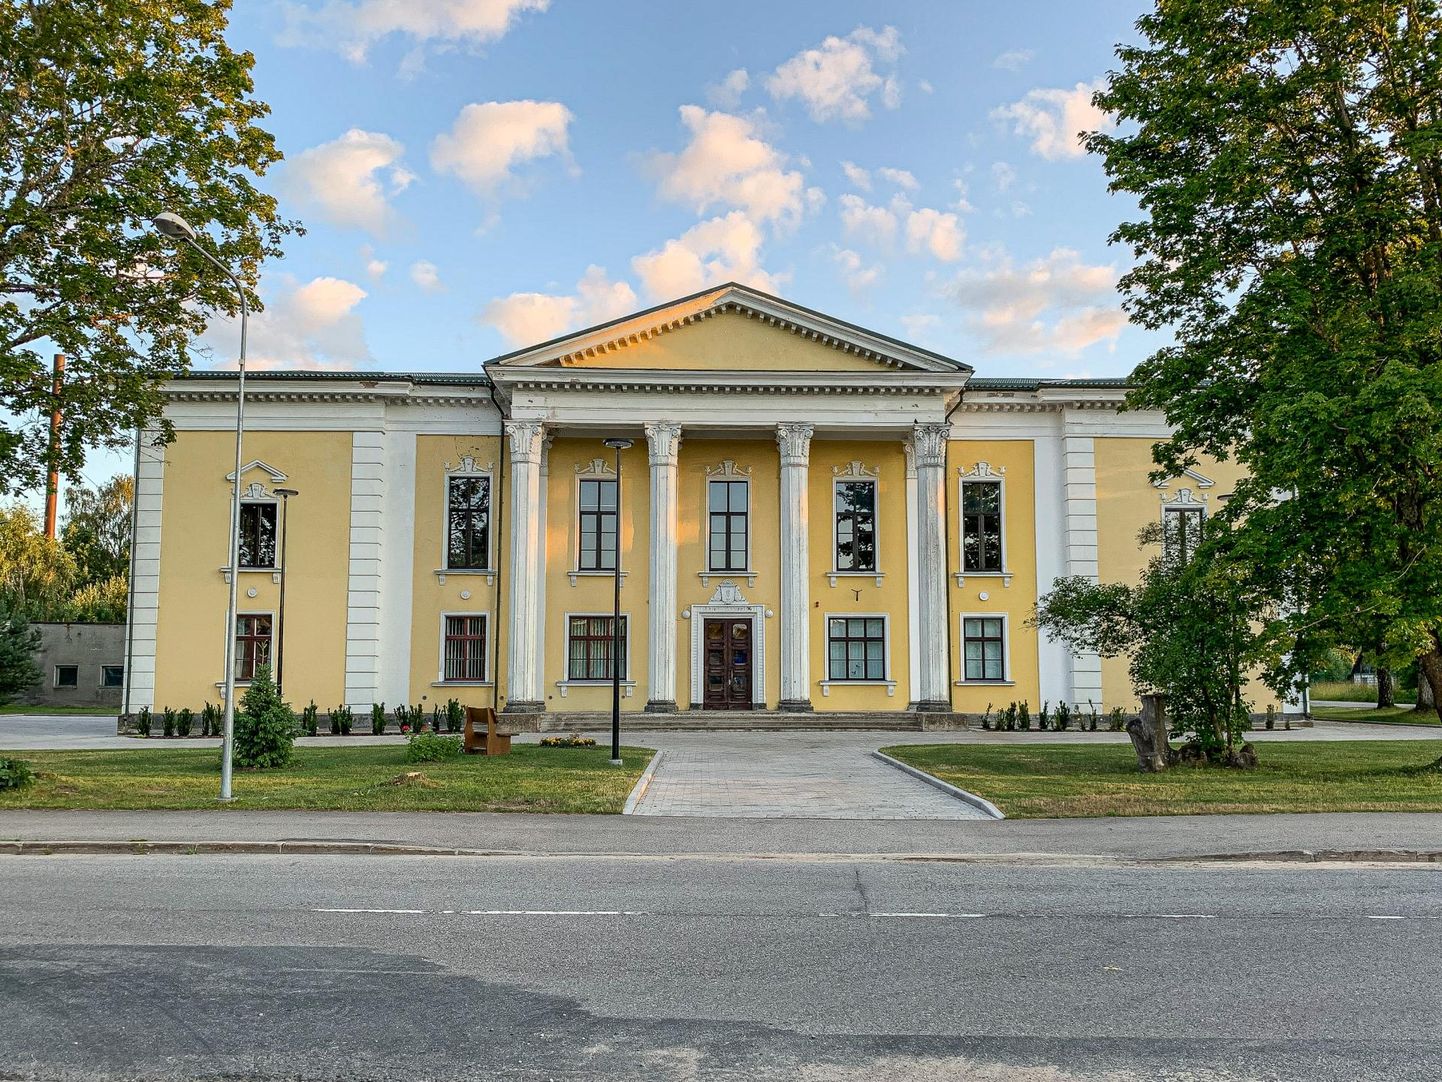 Vastseliina raamatukogu asub selles 1956. aastal ehitatud stalinistlikus uusklassitsistlikus rahvamaja hoones.